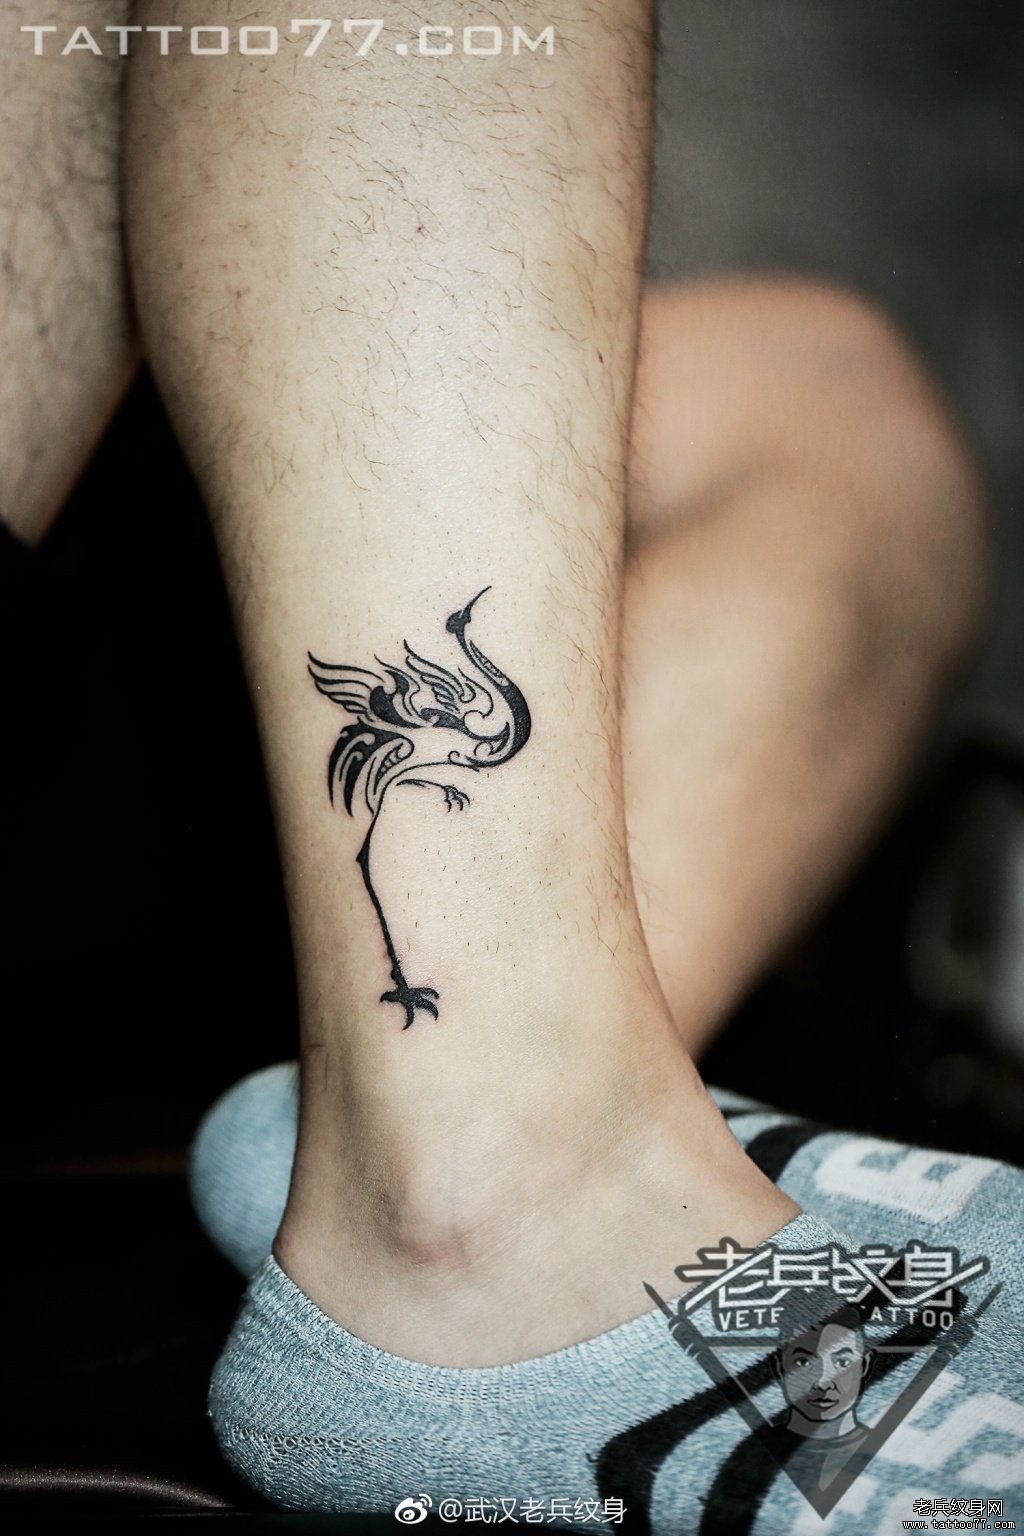 脚踝图腾鹤纹身图案作品